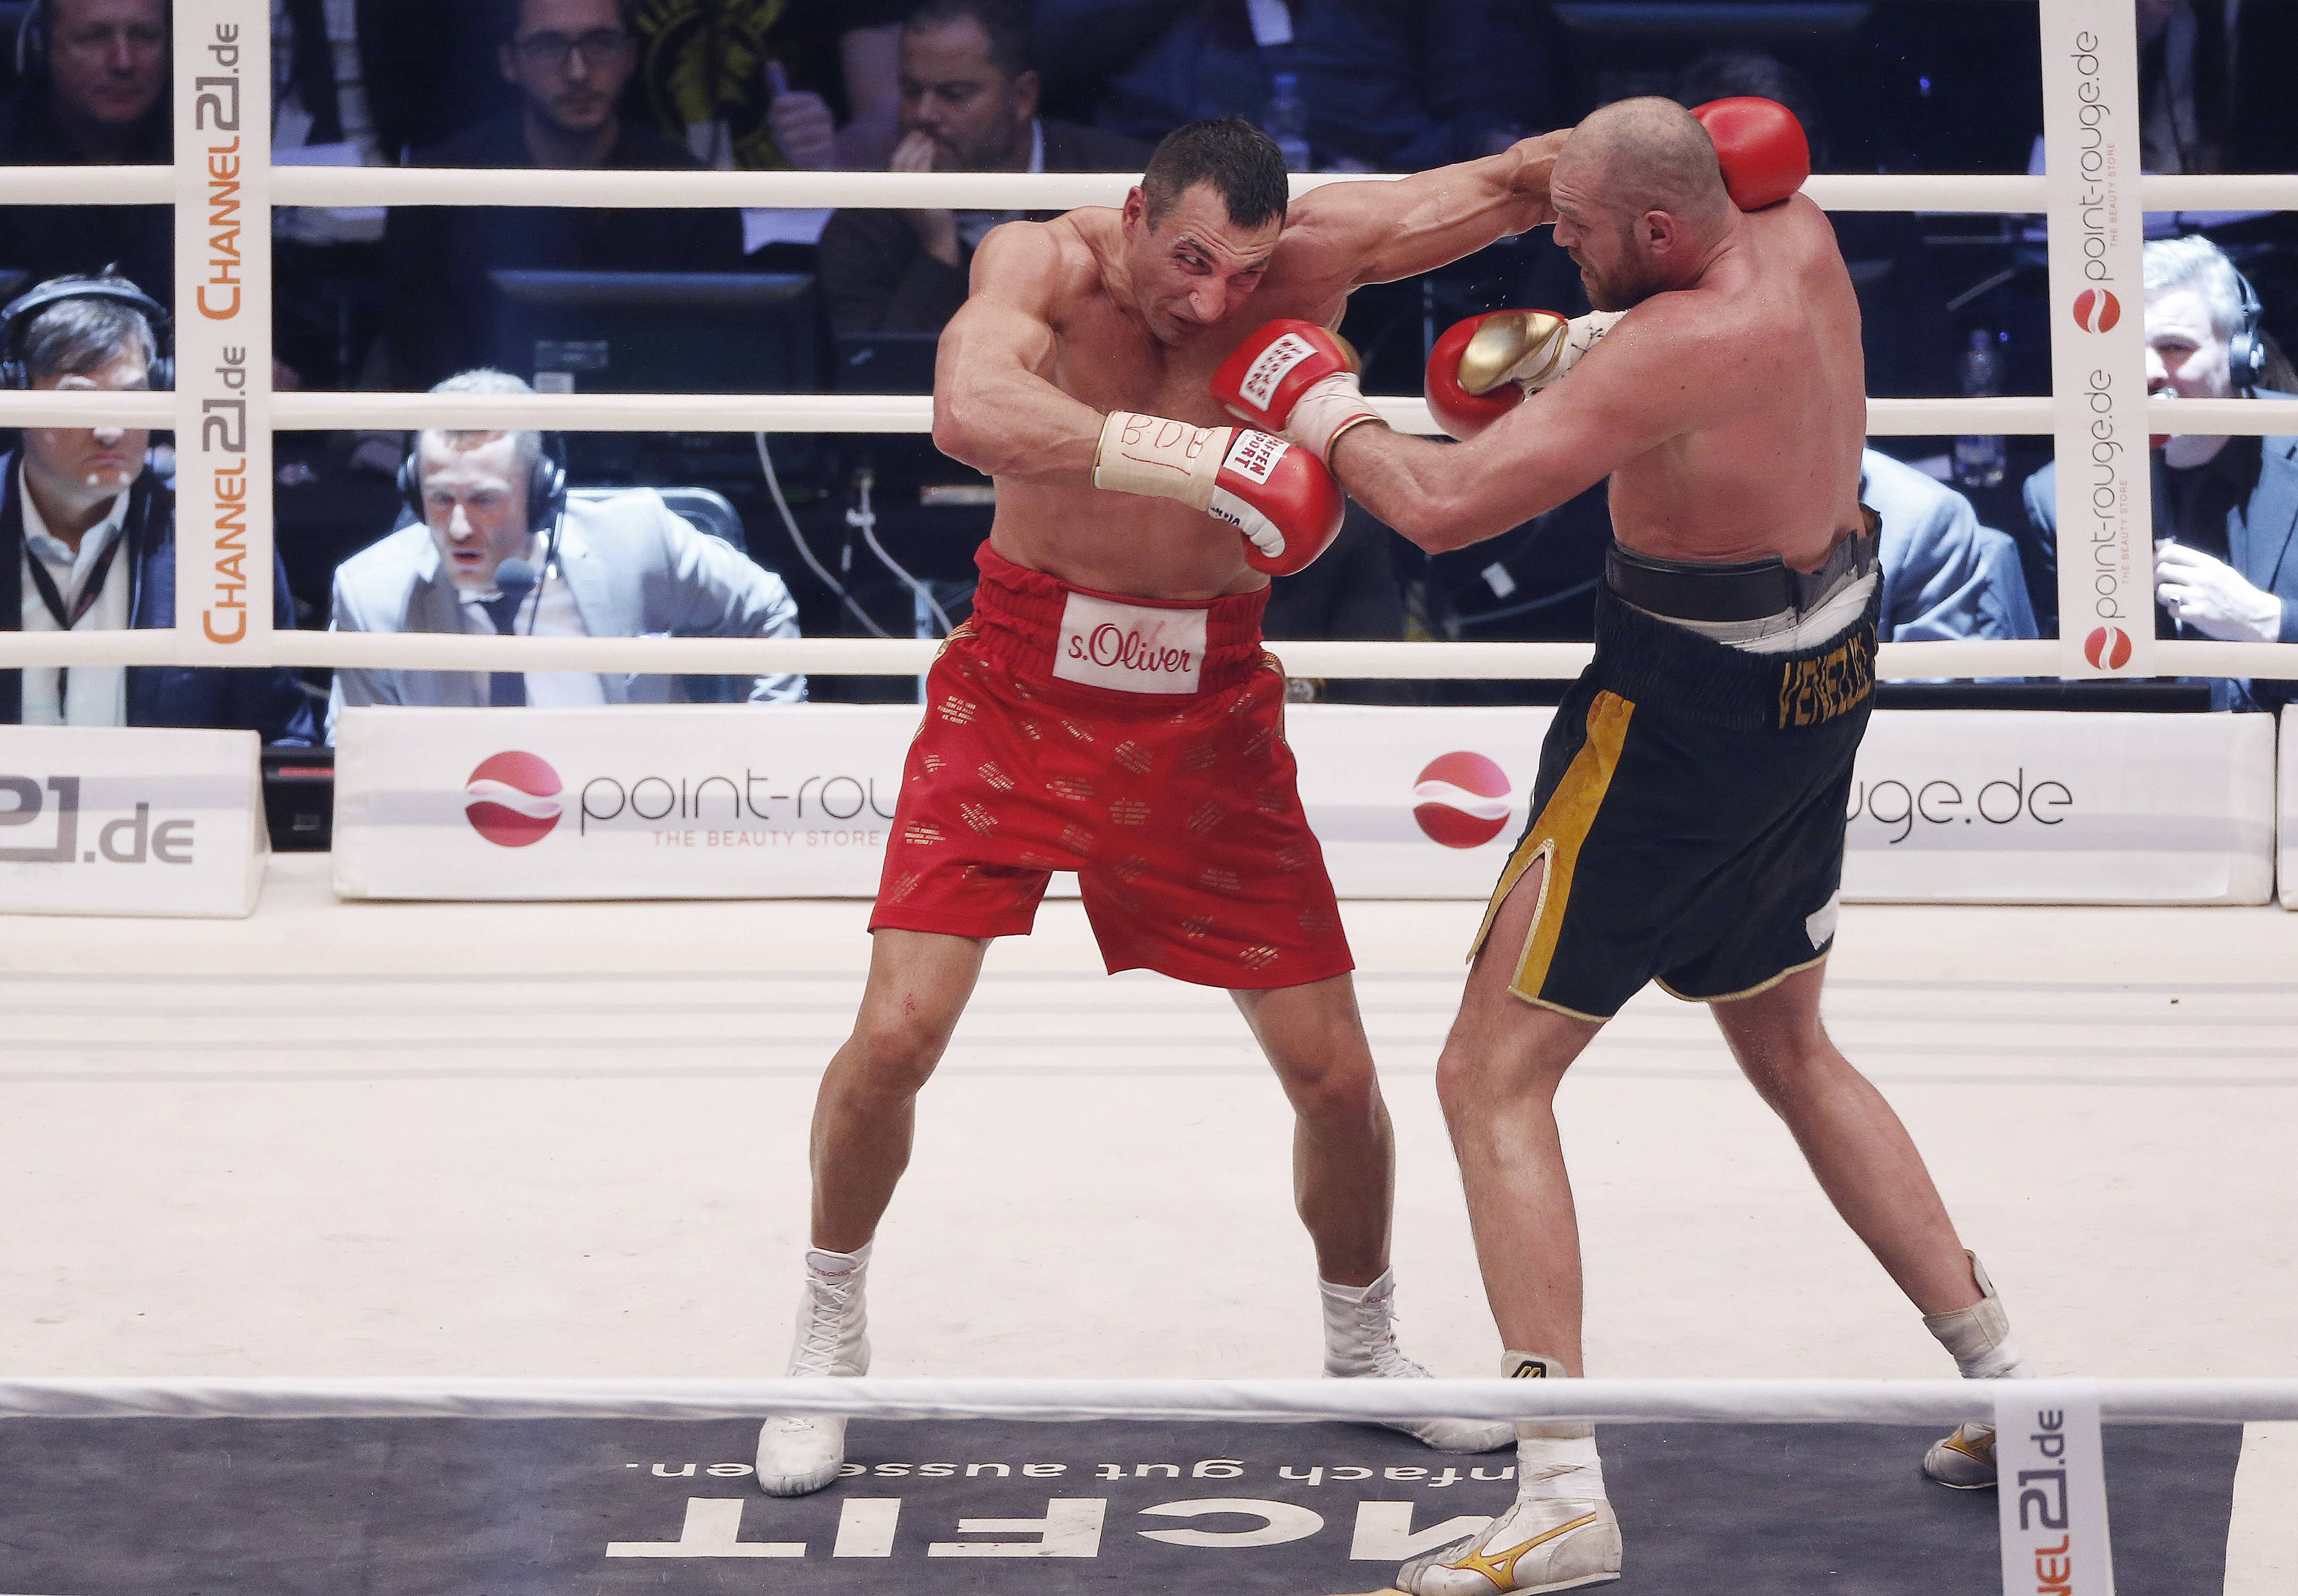 Tyson Fury stunned the world in his upset victory over Wladimir Klitschko in 2015 (IMAGO/Norbert Schmidt)